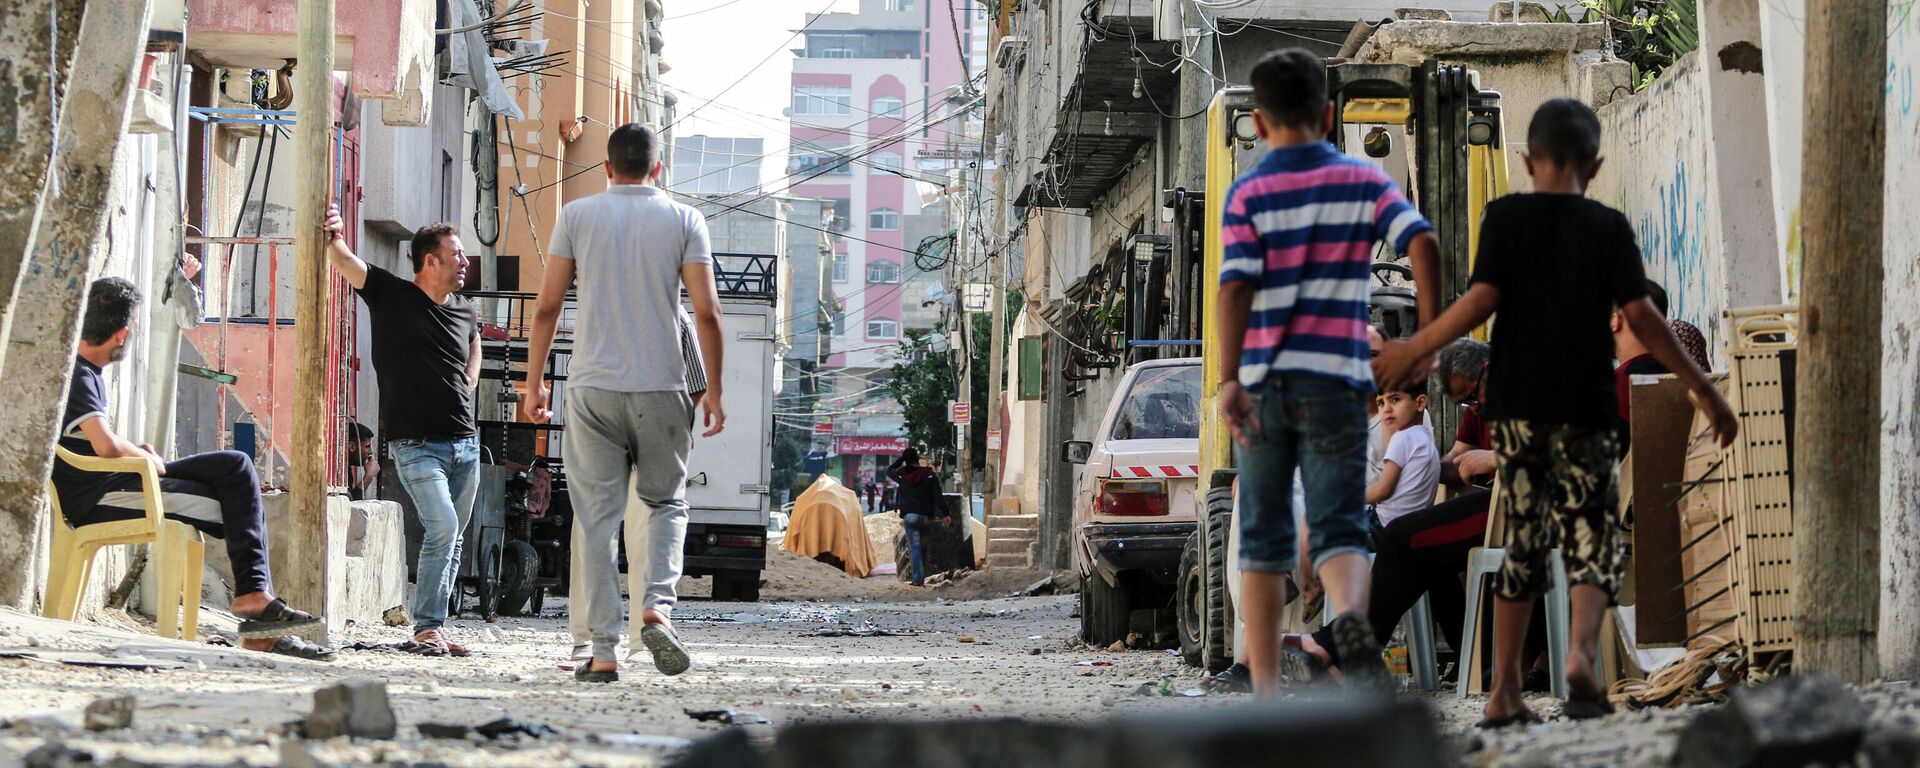 Жители Газы на улицах, разрушенных в результате бомбардировки в секторе Газа. - Sputnik Узбекистан, 1920, 21.05.2021